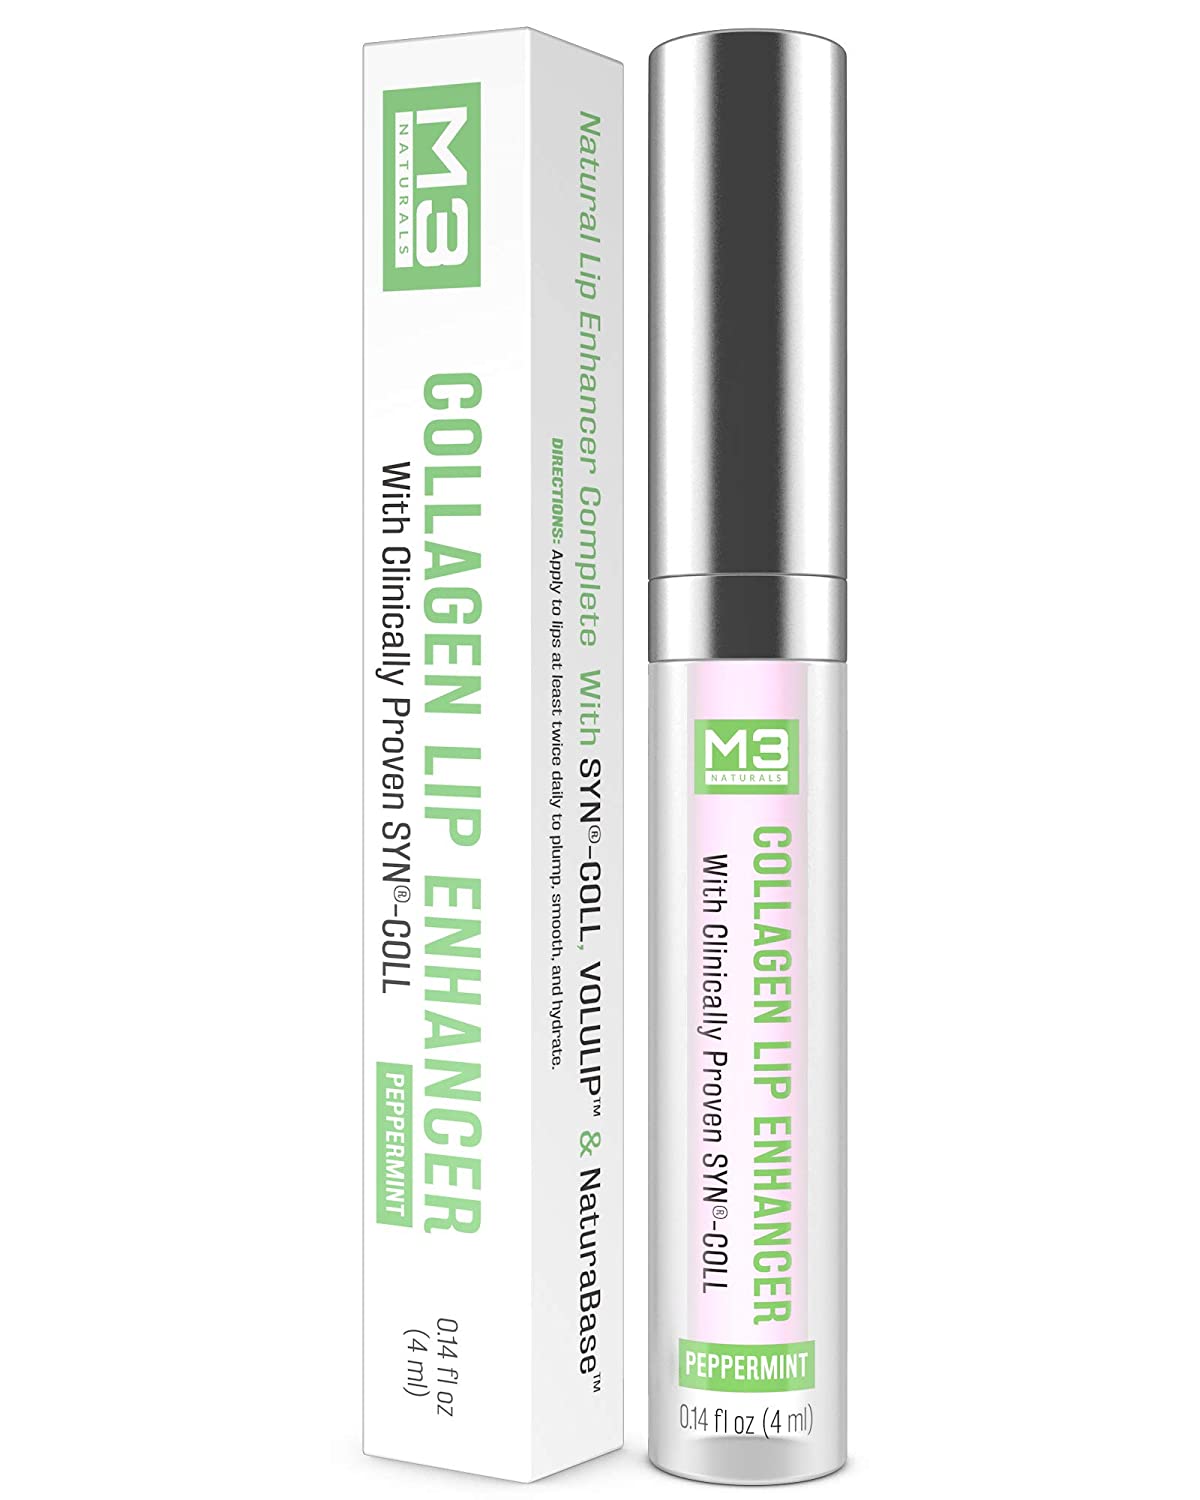 Collagen Lip Enhancer - M3 Naturals